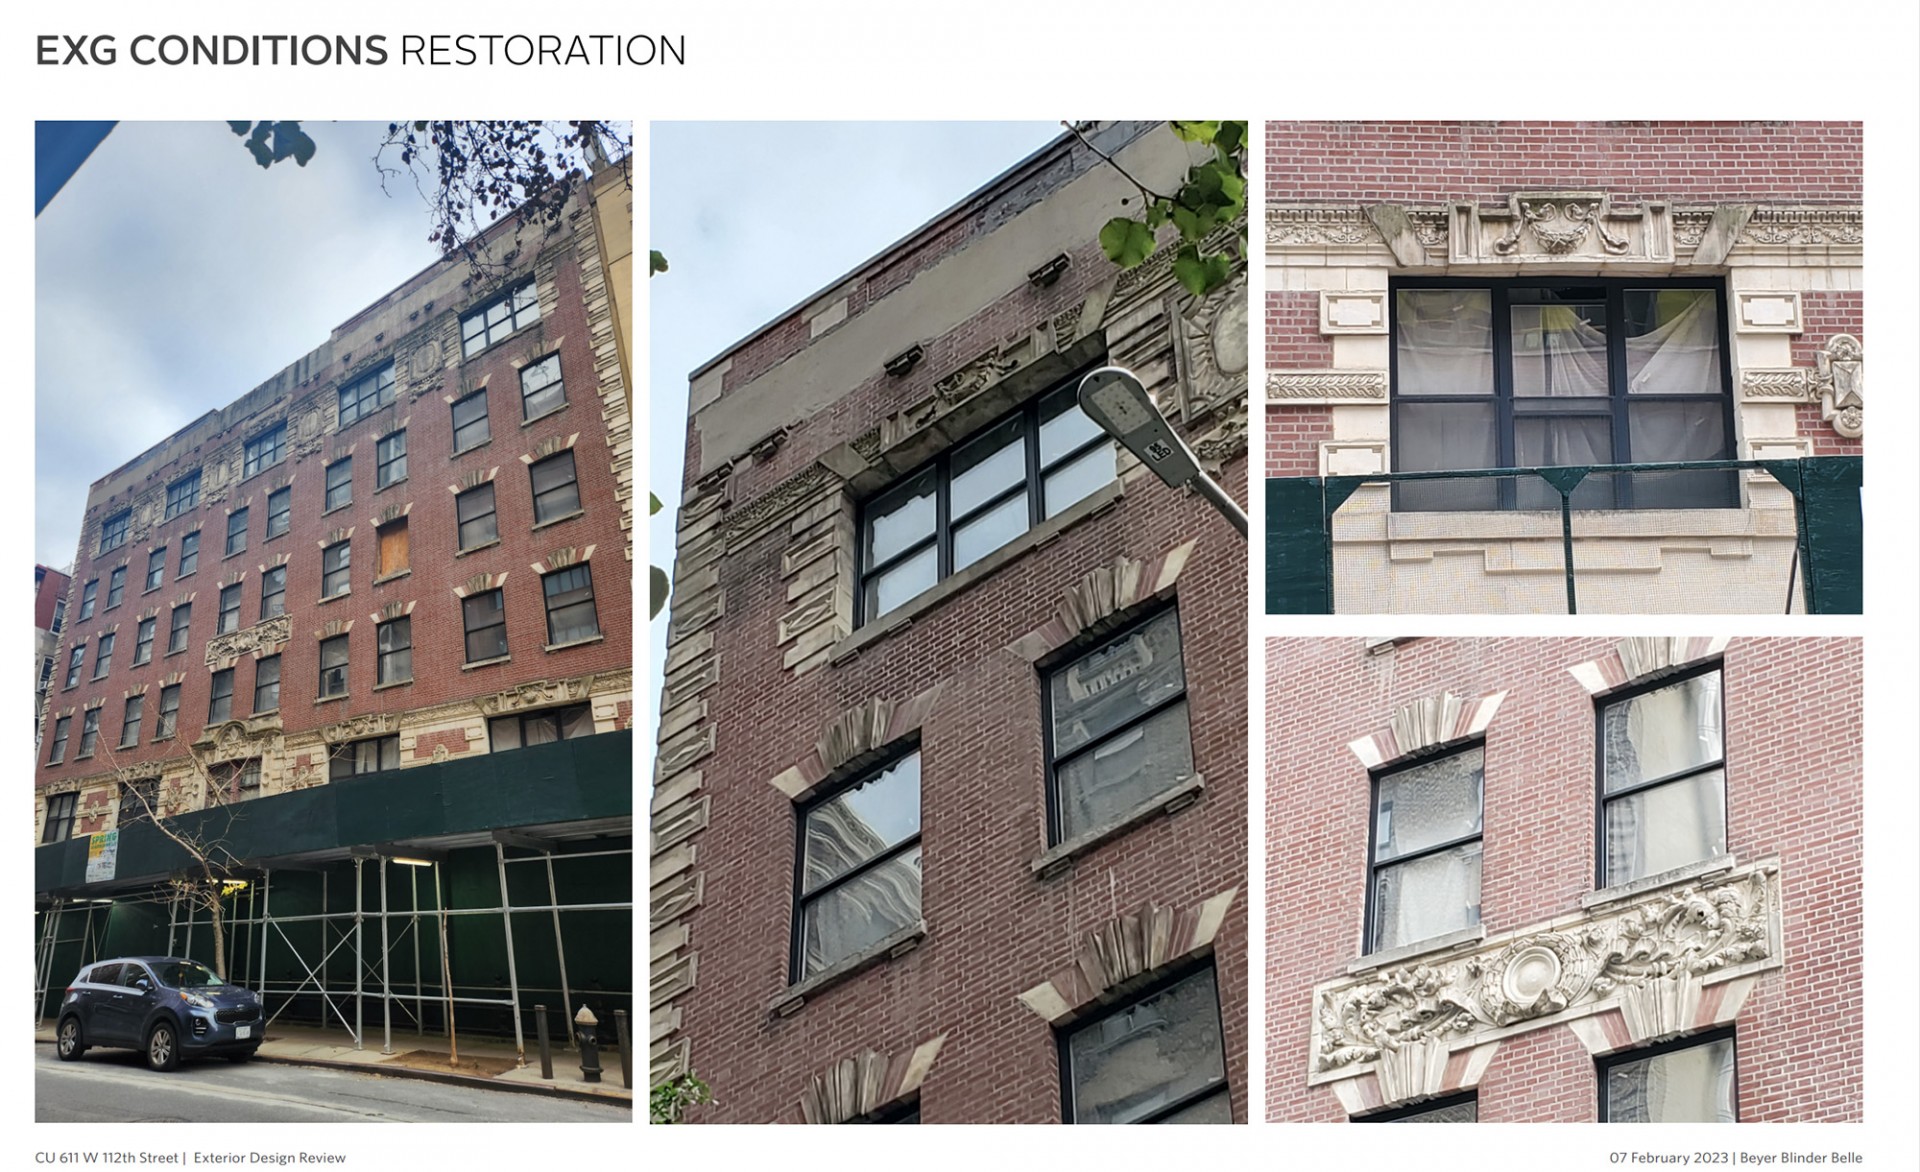 Building restoration images